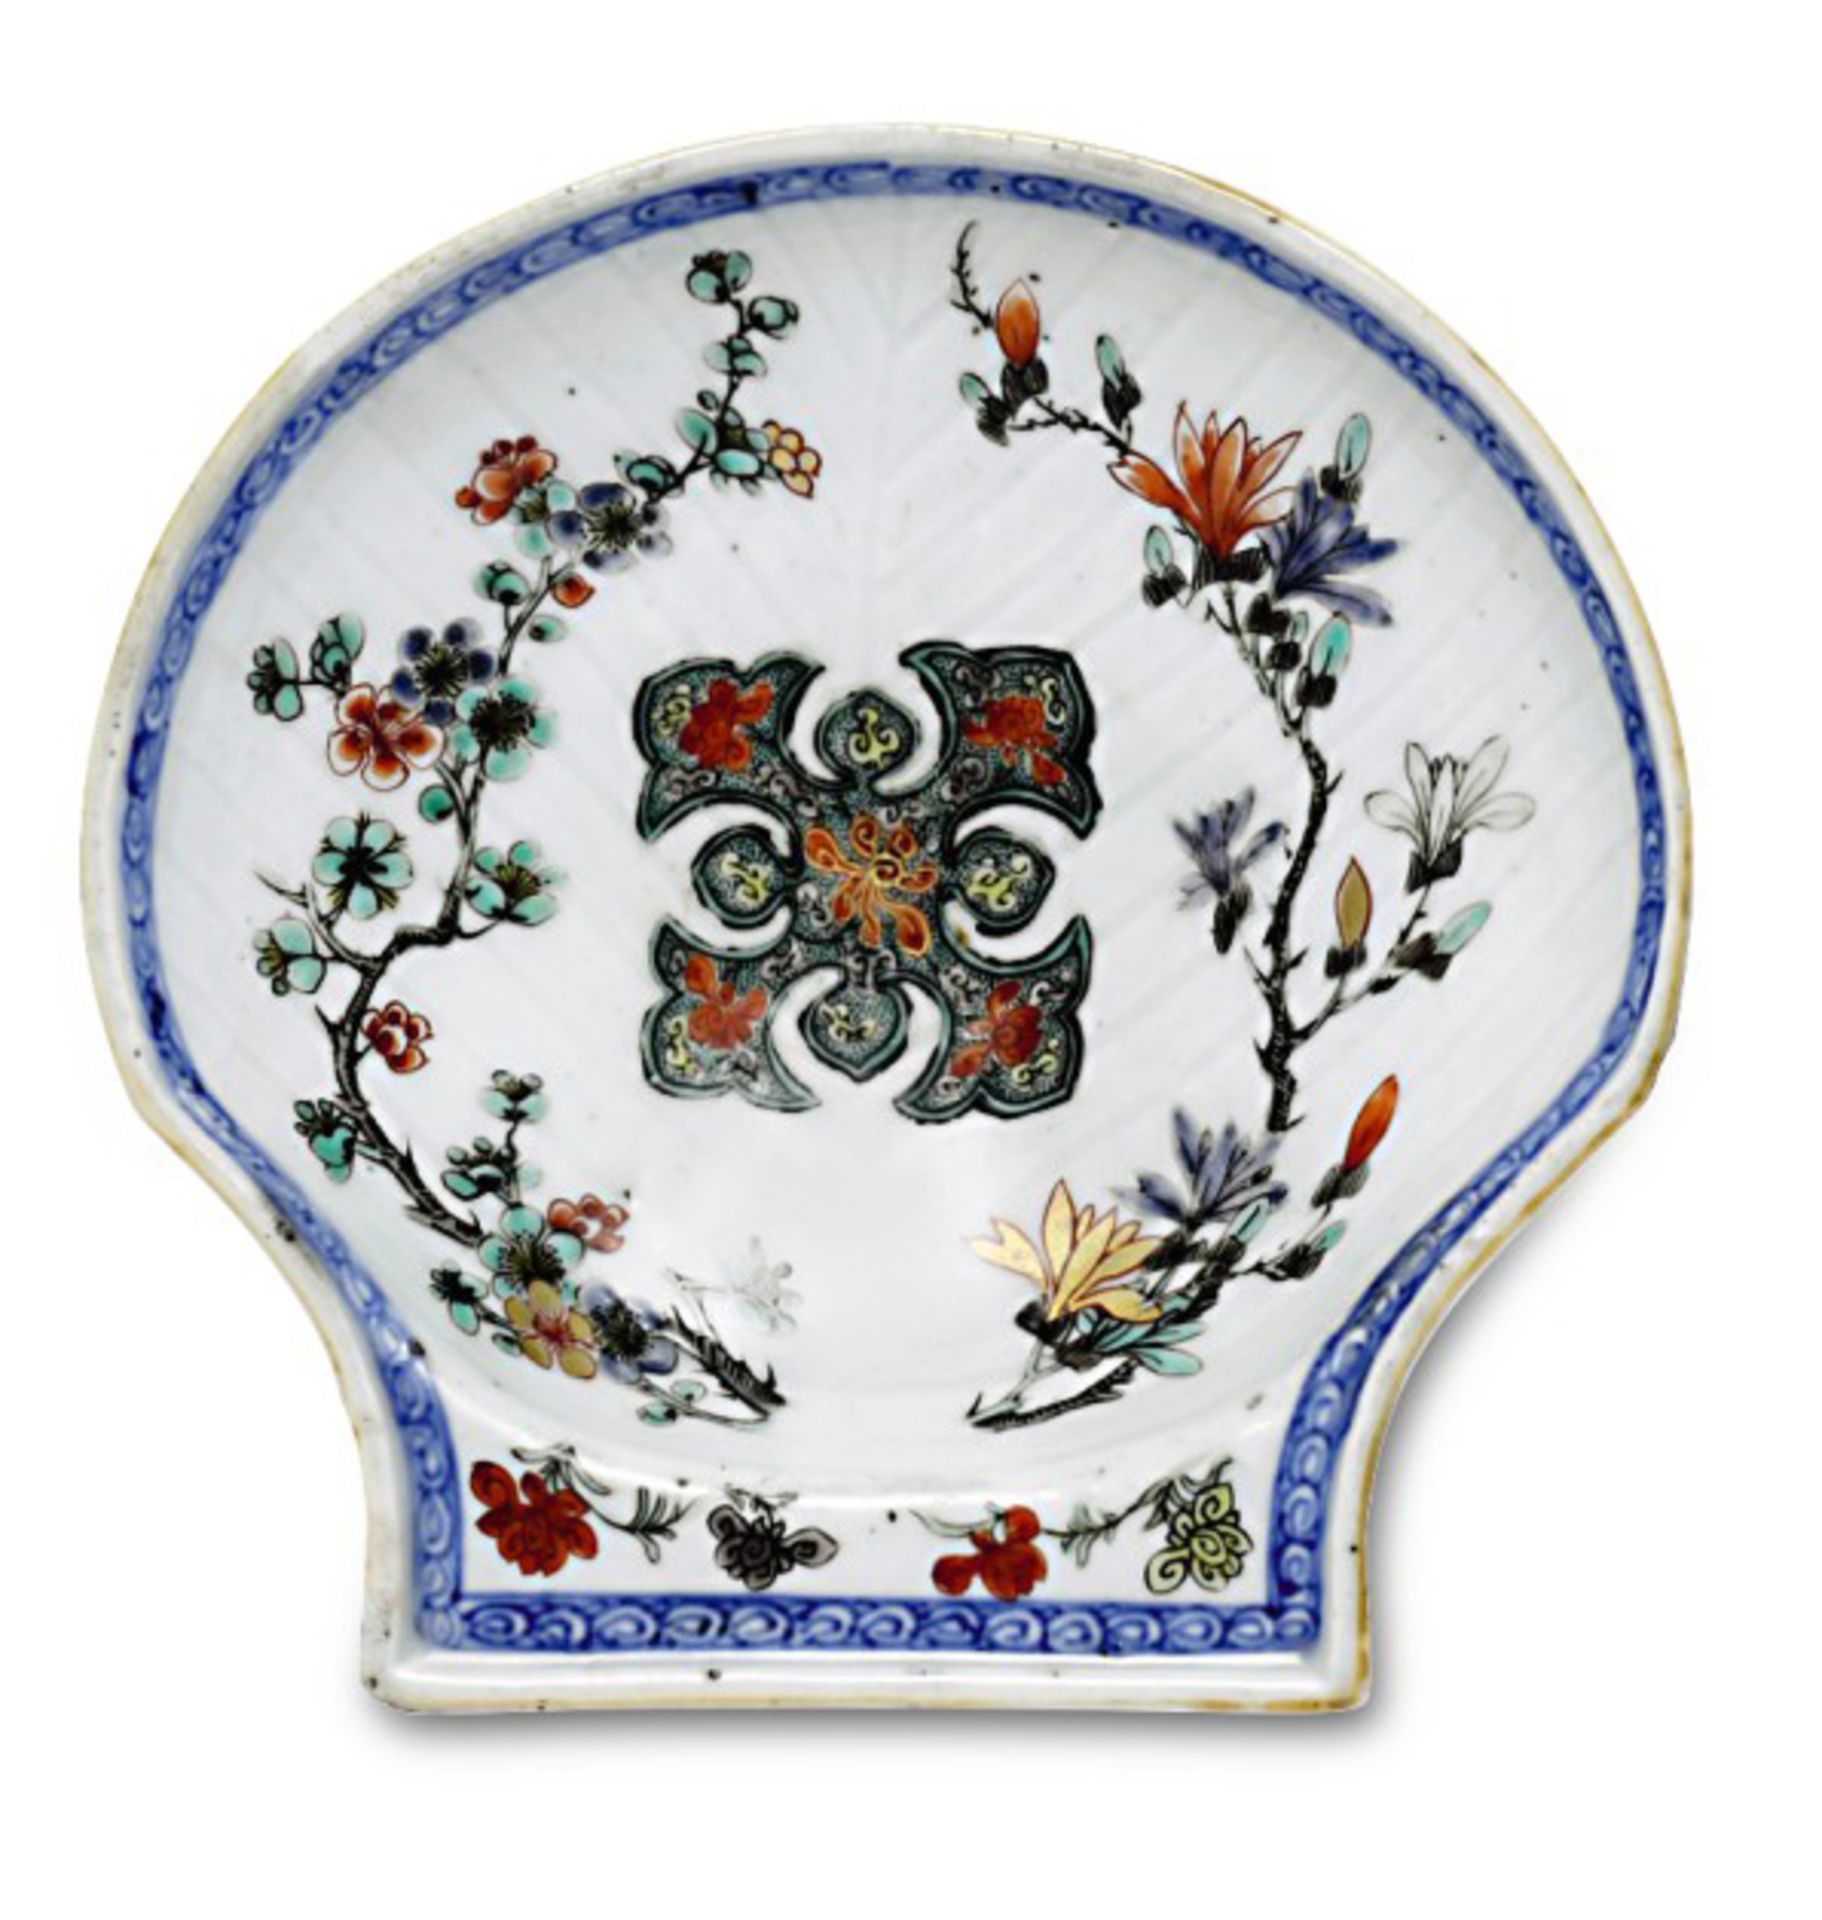 MuschelschaleChina, Qing, 18. Jh. Porzellan. Farbiger Blütenzweige-Dekor, Goldstaffage. Glasur